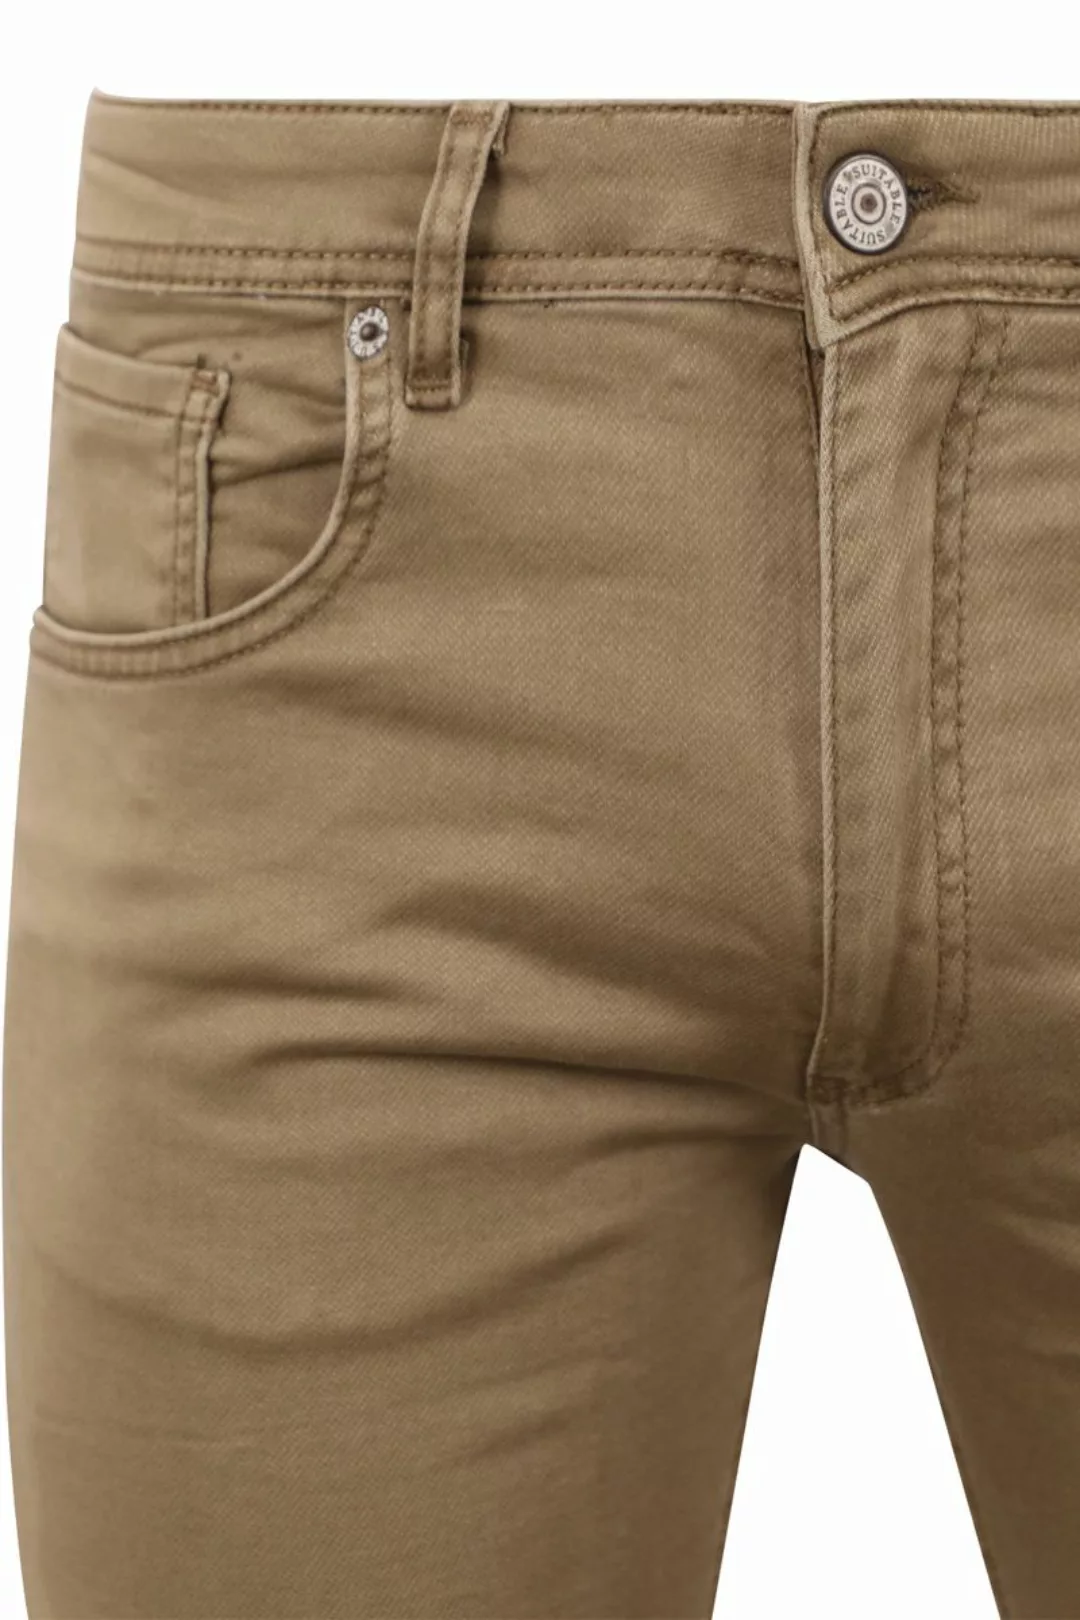 Suitable Kant Jeans Khaki - Größe W 34 - L 30 günstig online kaufen